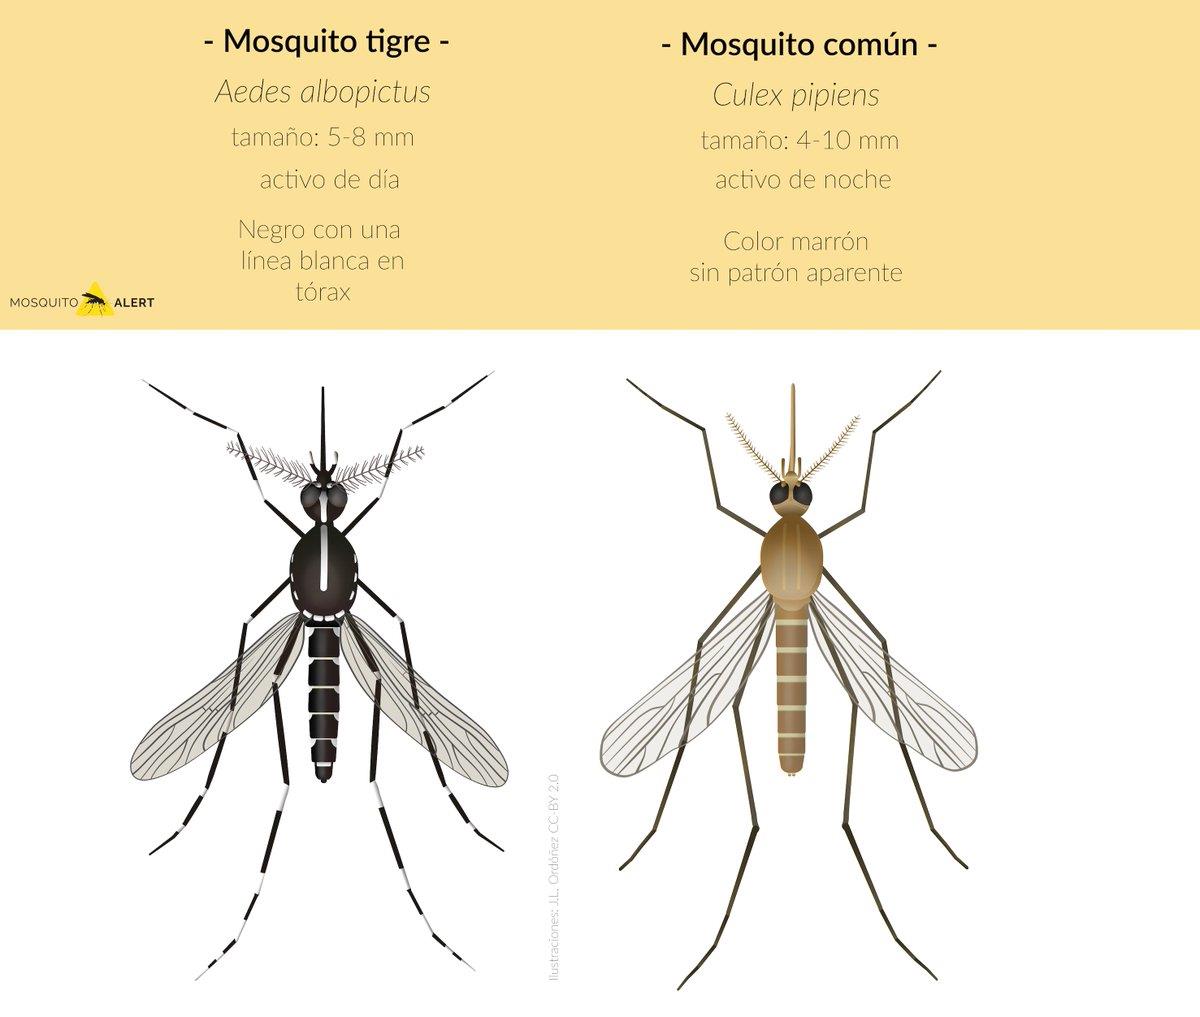 Mosquito tigre - Diferencias frente al mosquito común